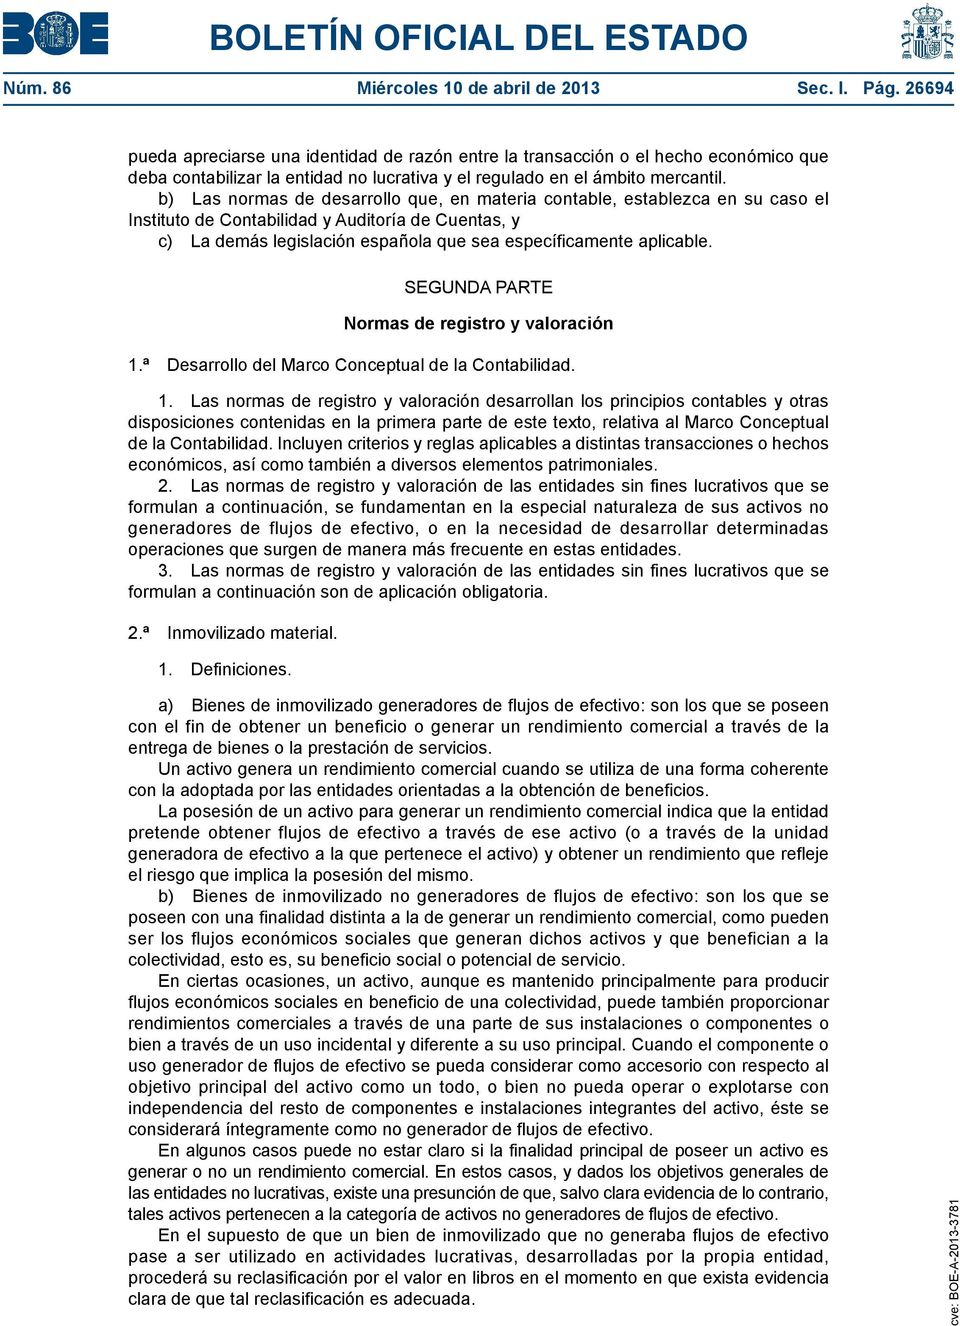 b) Las normas de desarrollo que, en materia contable, establezca en su caso el Instituto de Contabilidad y Auditoría de Cuentas, y c) La demás legislación española que sea específicamente aplicable.